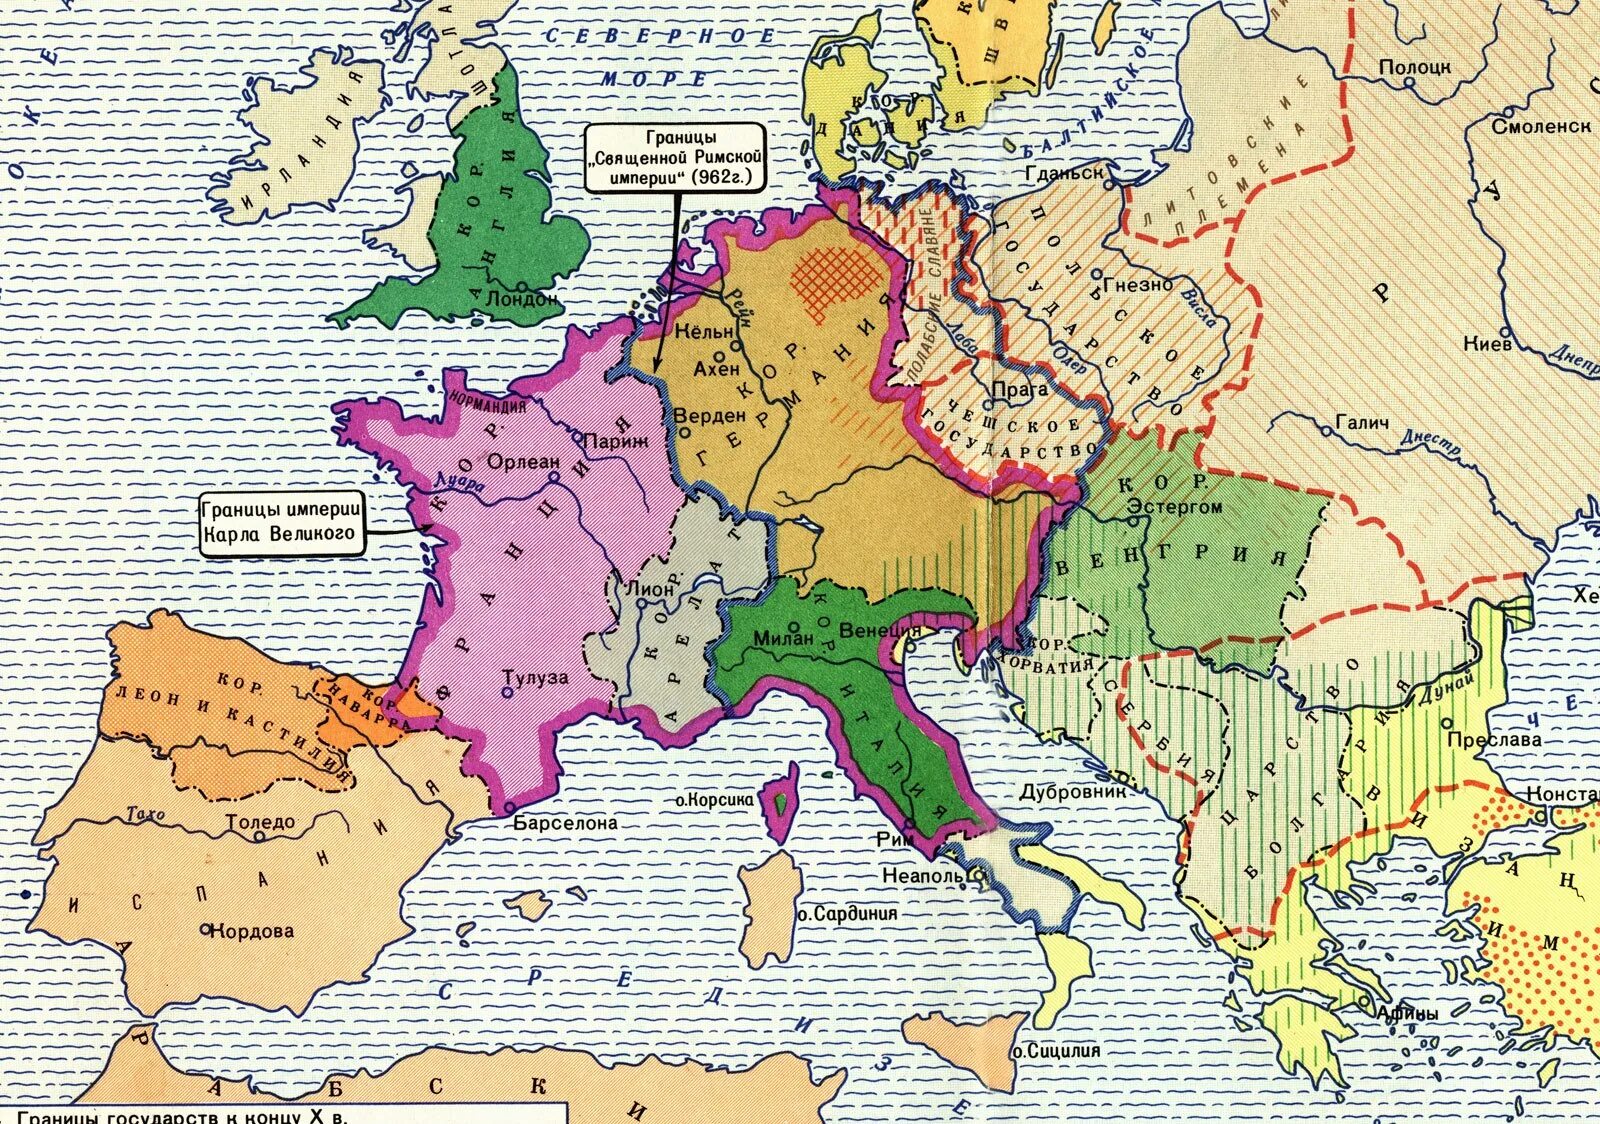 Карта Европы в средние века 10 век. Западная Европа 10 век карта. Карта средневековой Европы 9-11 веков. Карта Европы средневековья 10 век. Города республики в европе в средние века